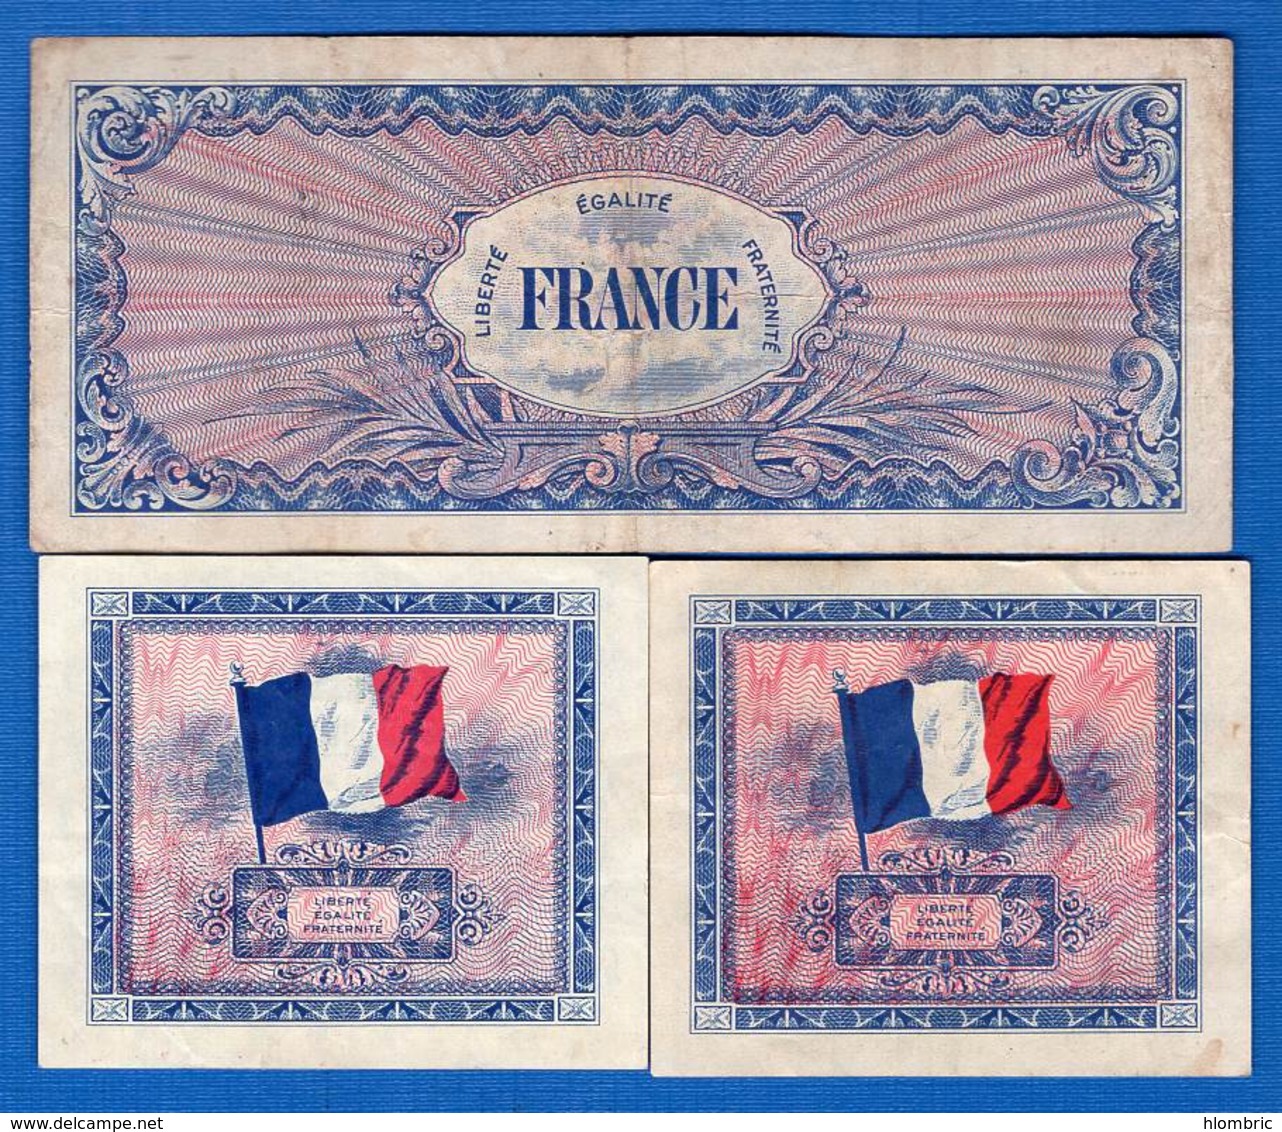 3 Billets - 1944 Drapeau/Francia